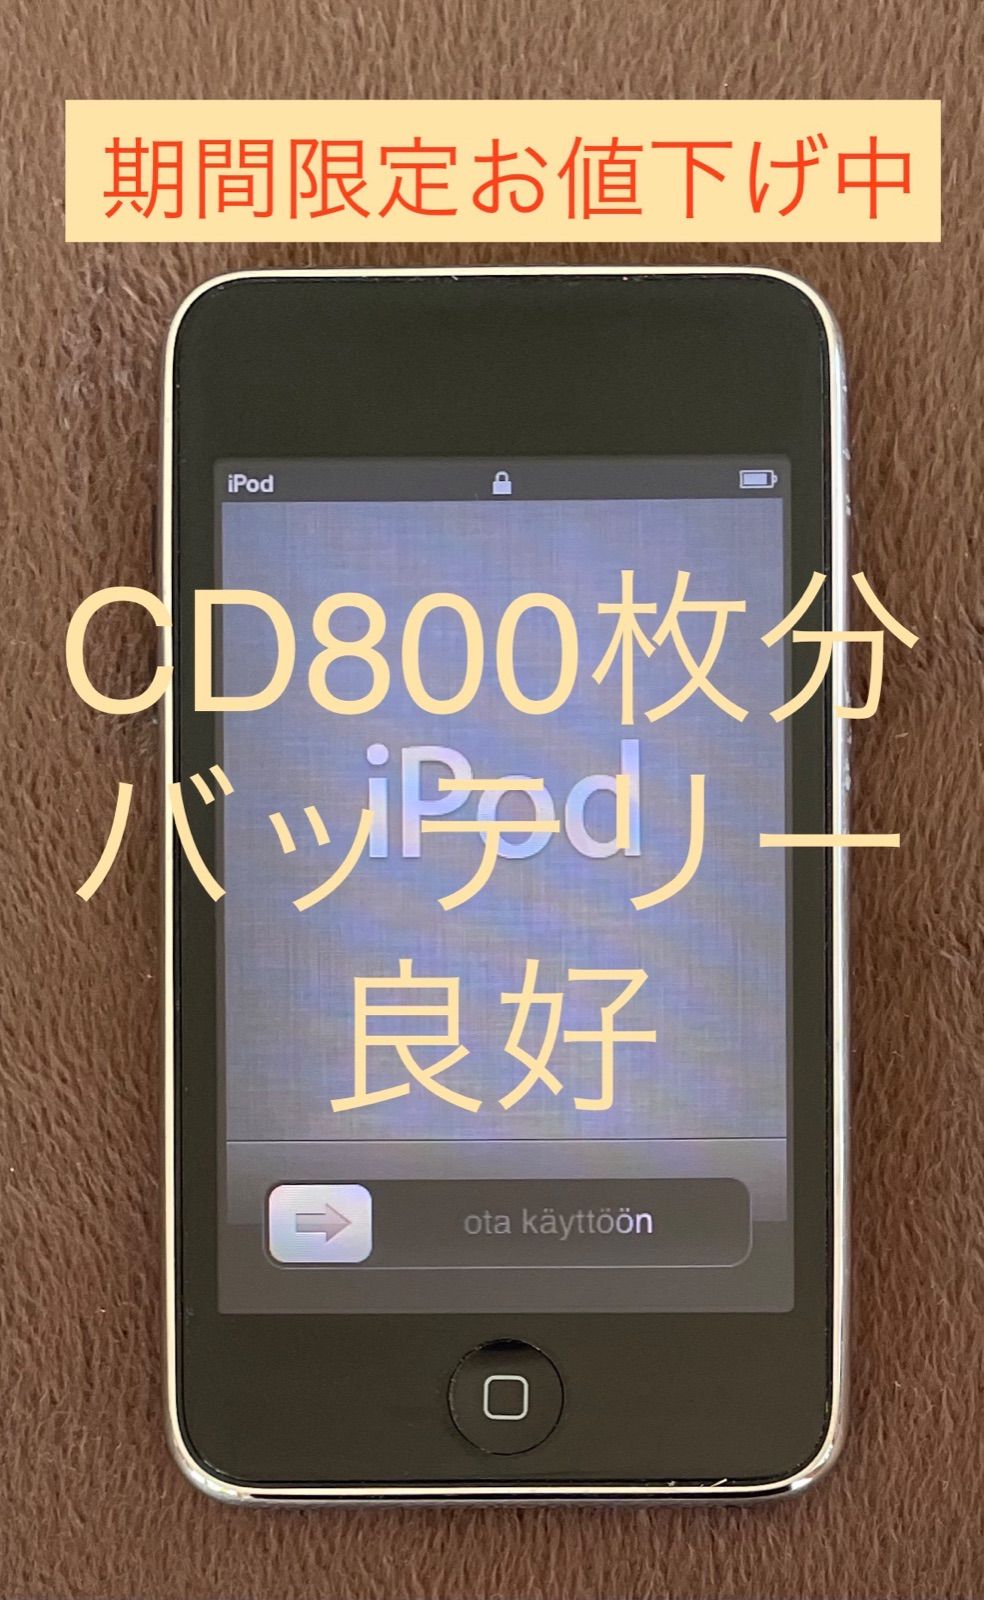 iPod touch 64GB 第3世代 良品 - メイローショップ - メルカリ